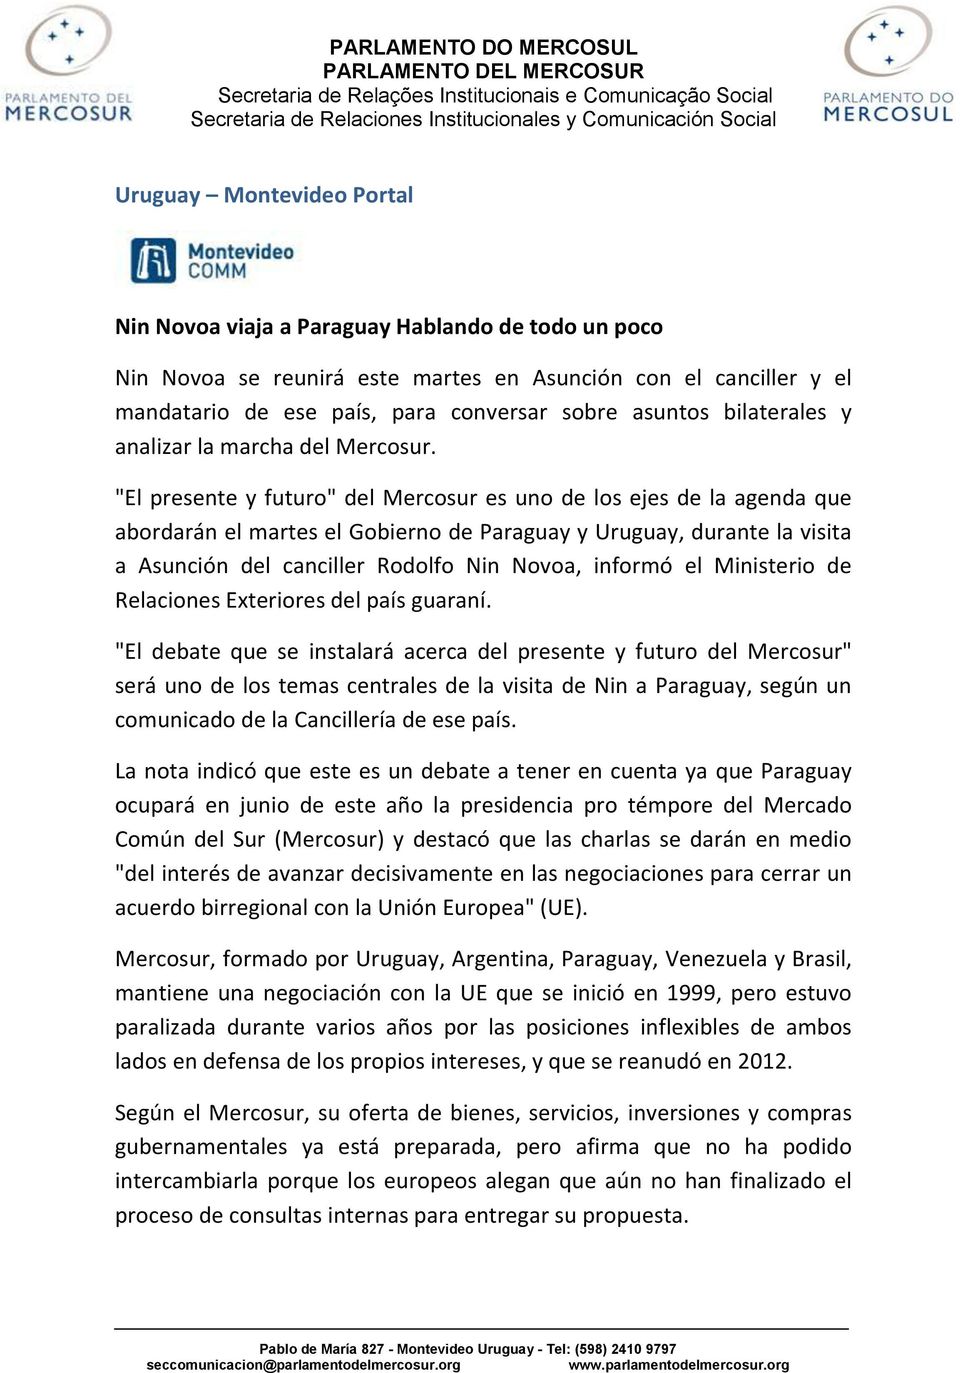 "El presente y futuro" del Mercosur es uno de los ejes de la agenda que abordarán el martes el Gobierno de Paraguay y Uruguay, durante la visita a Asunción del canciller Rodolfo Nin Novoa, informó el